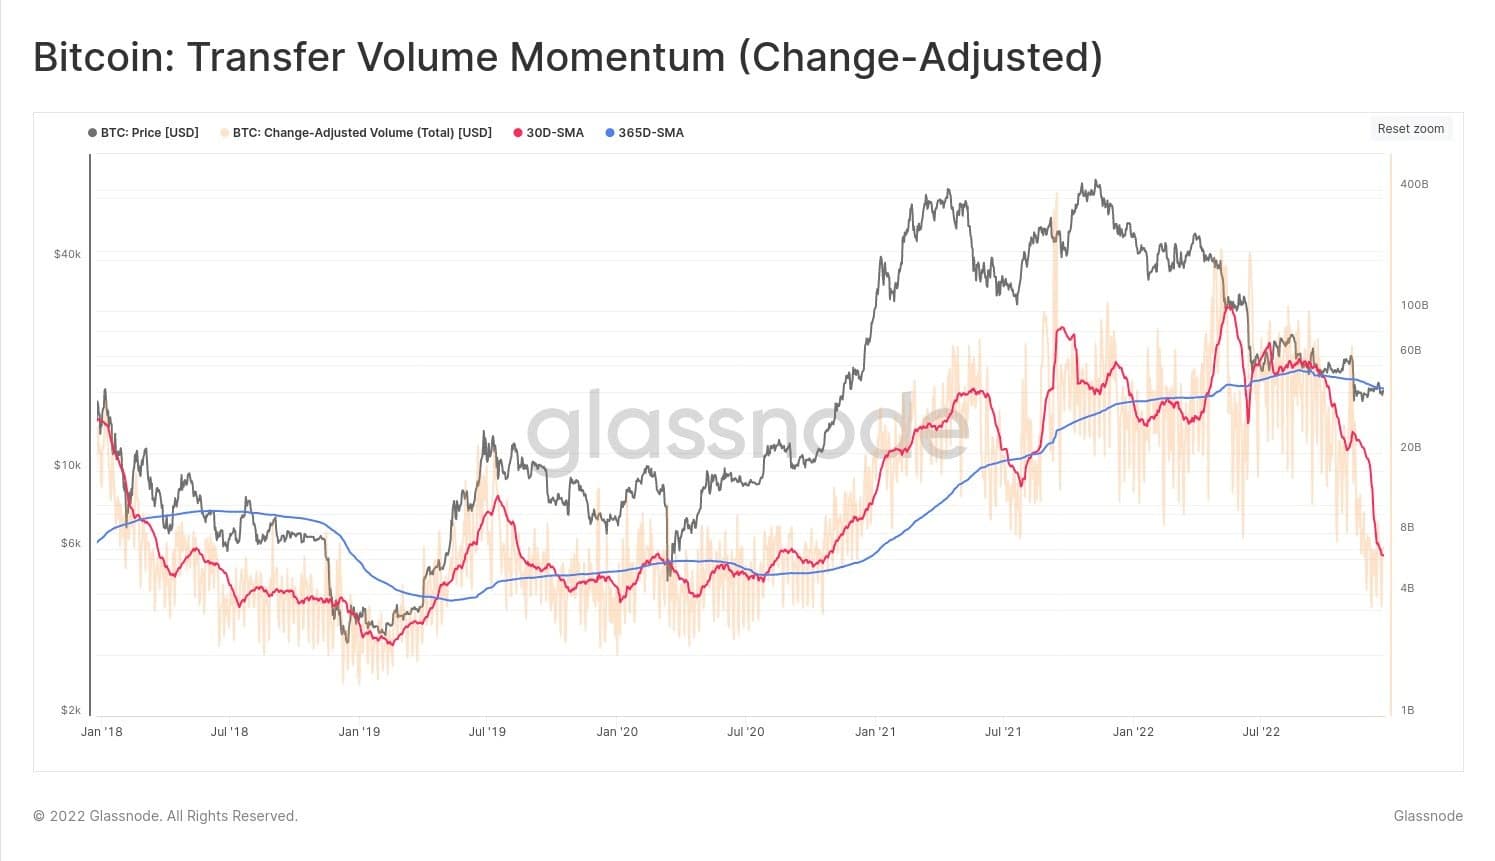 Évolution du volume de transfert de bitcoins depuis janvier 2018 (Source : Glassnode)